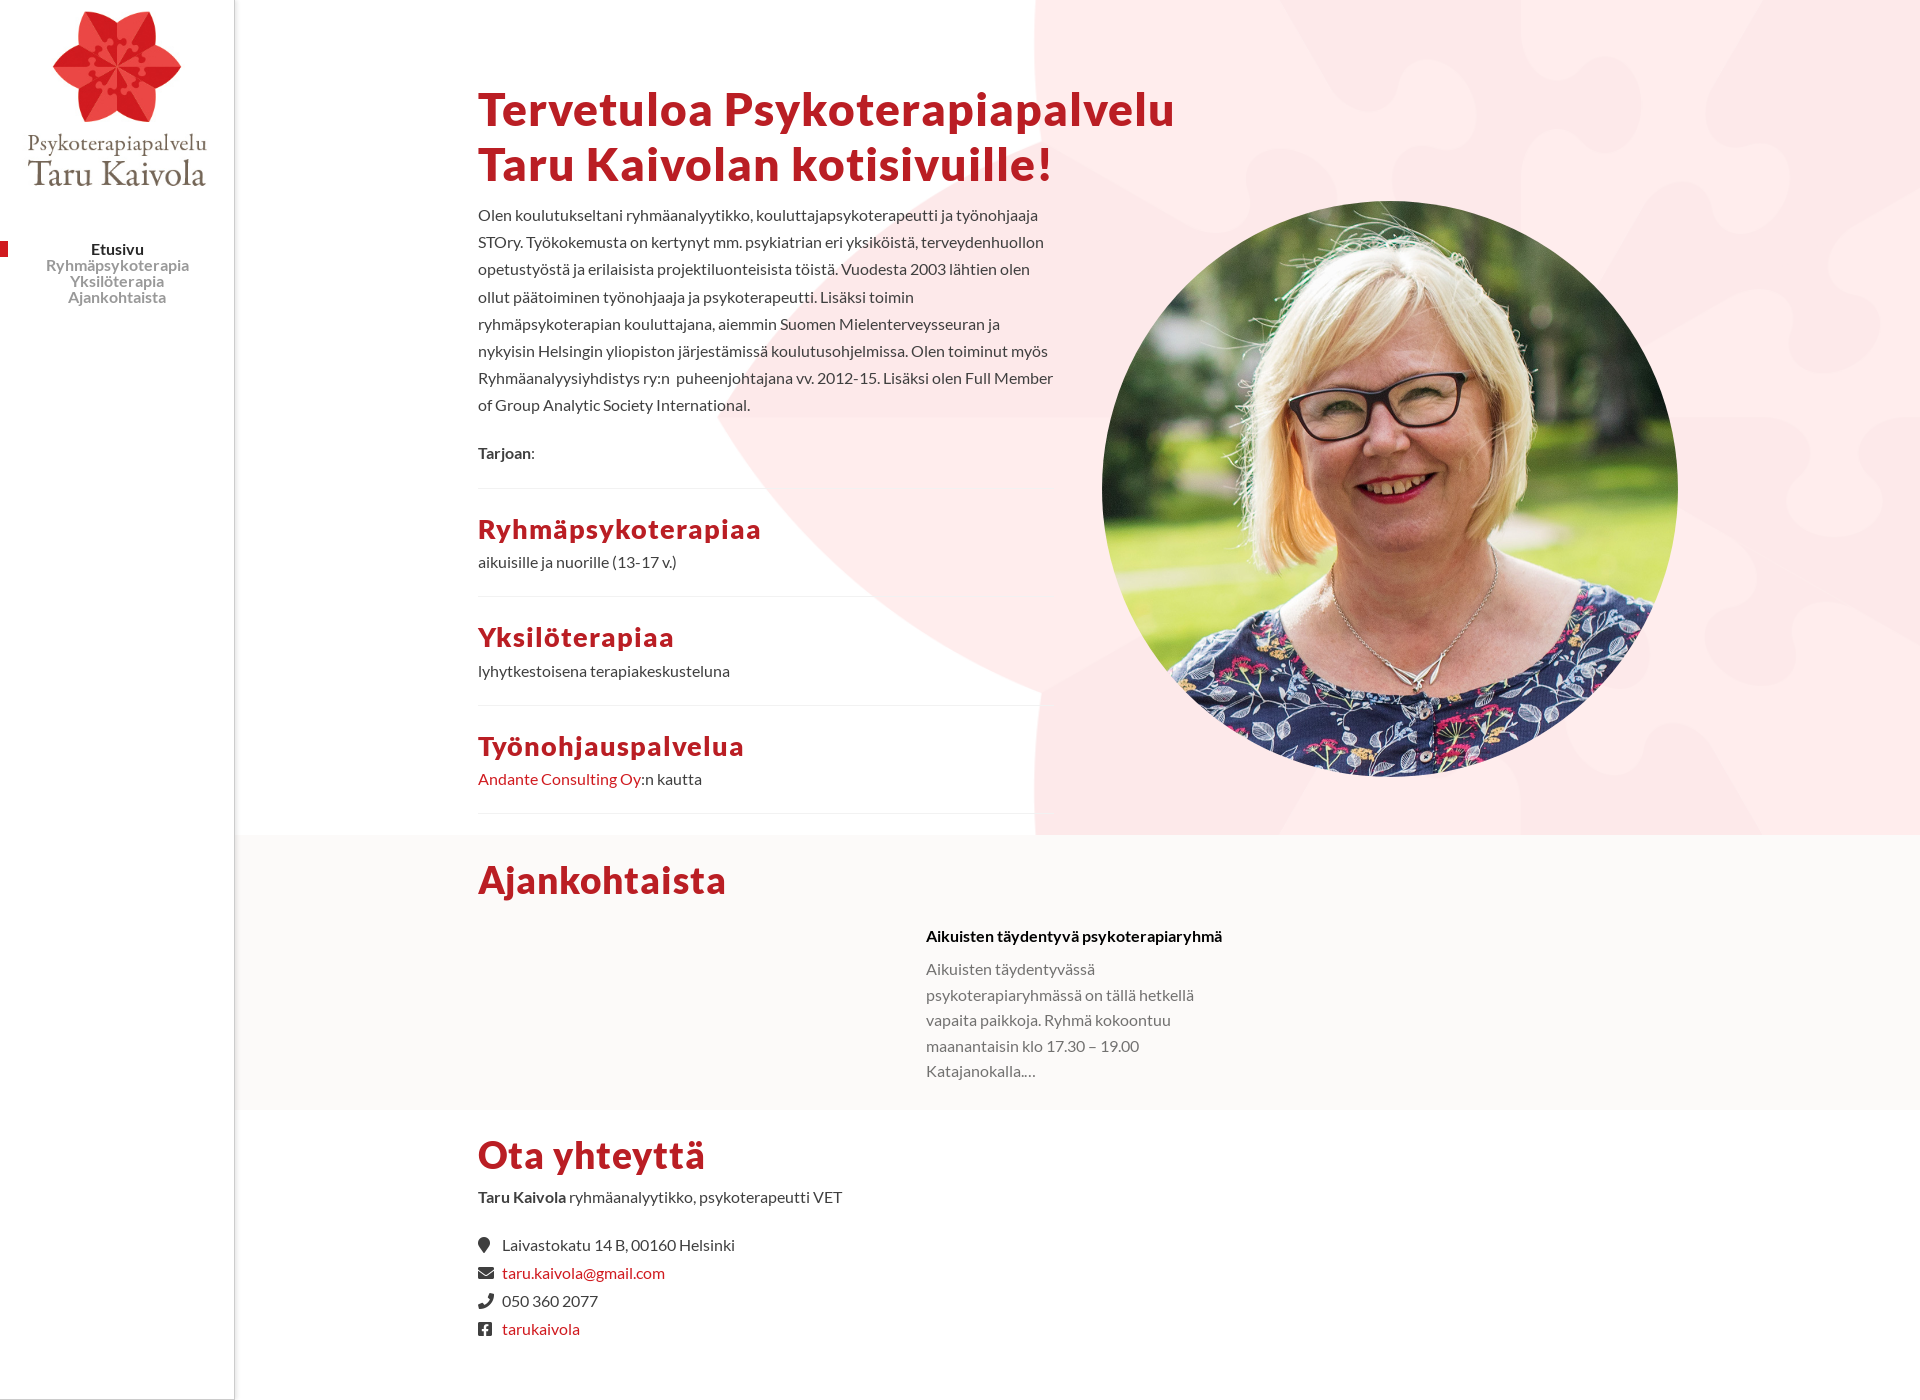 Näyttökuva psykoterapiapalvelutarukaivola.fi